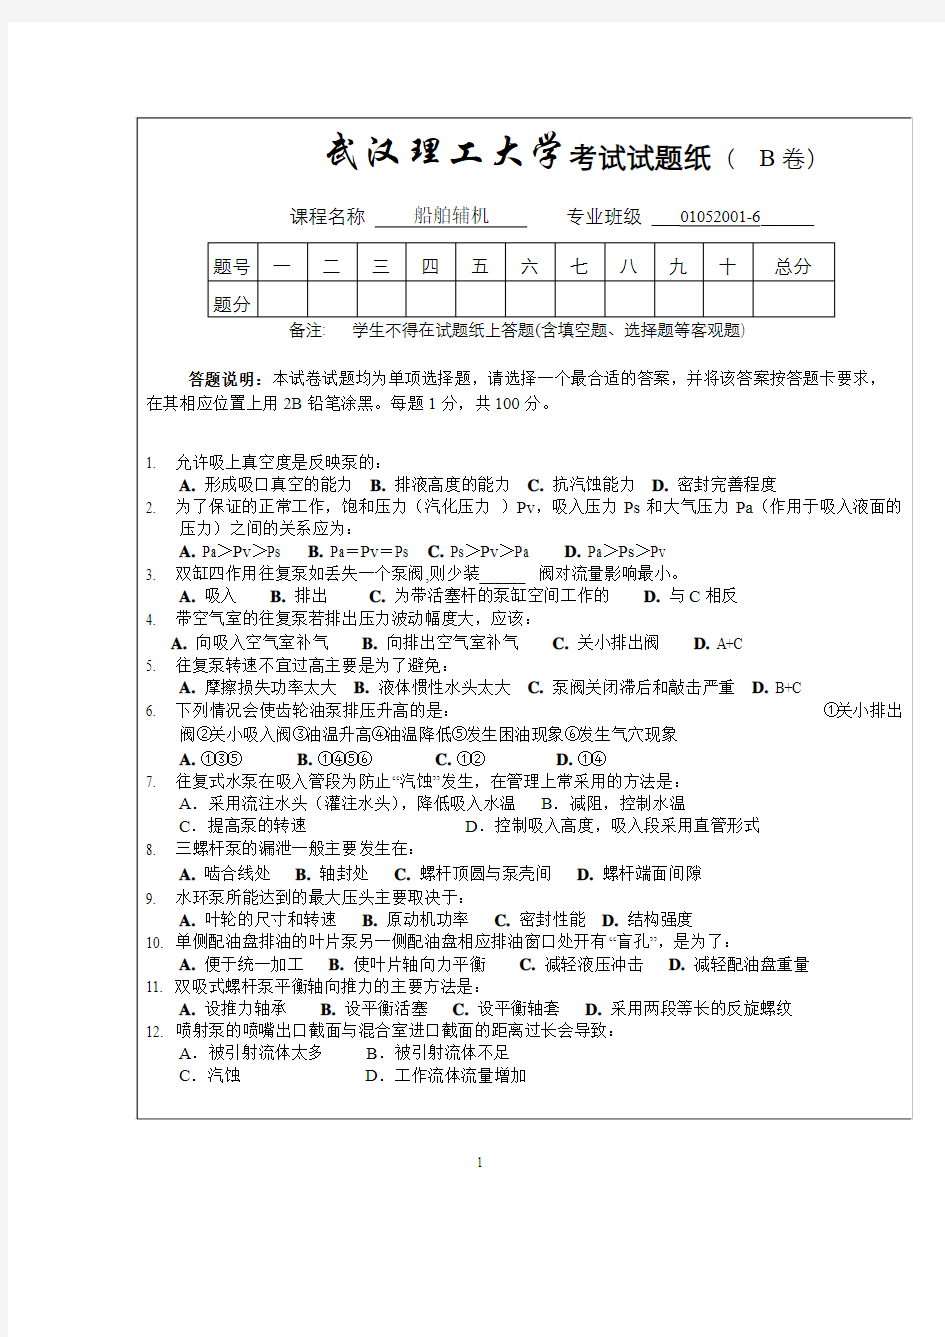 武汉理工大学考试试题纸( 卷)_12709